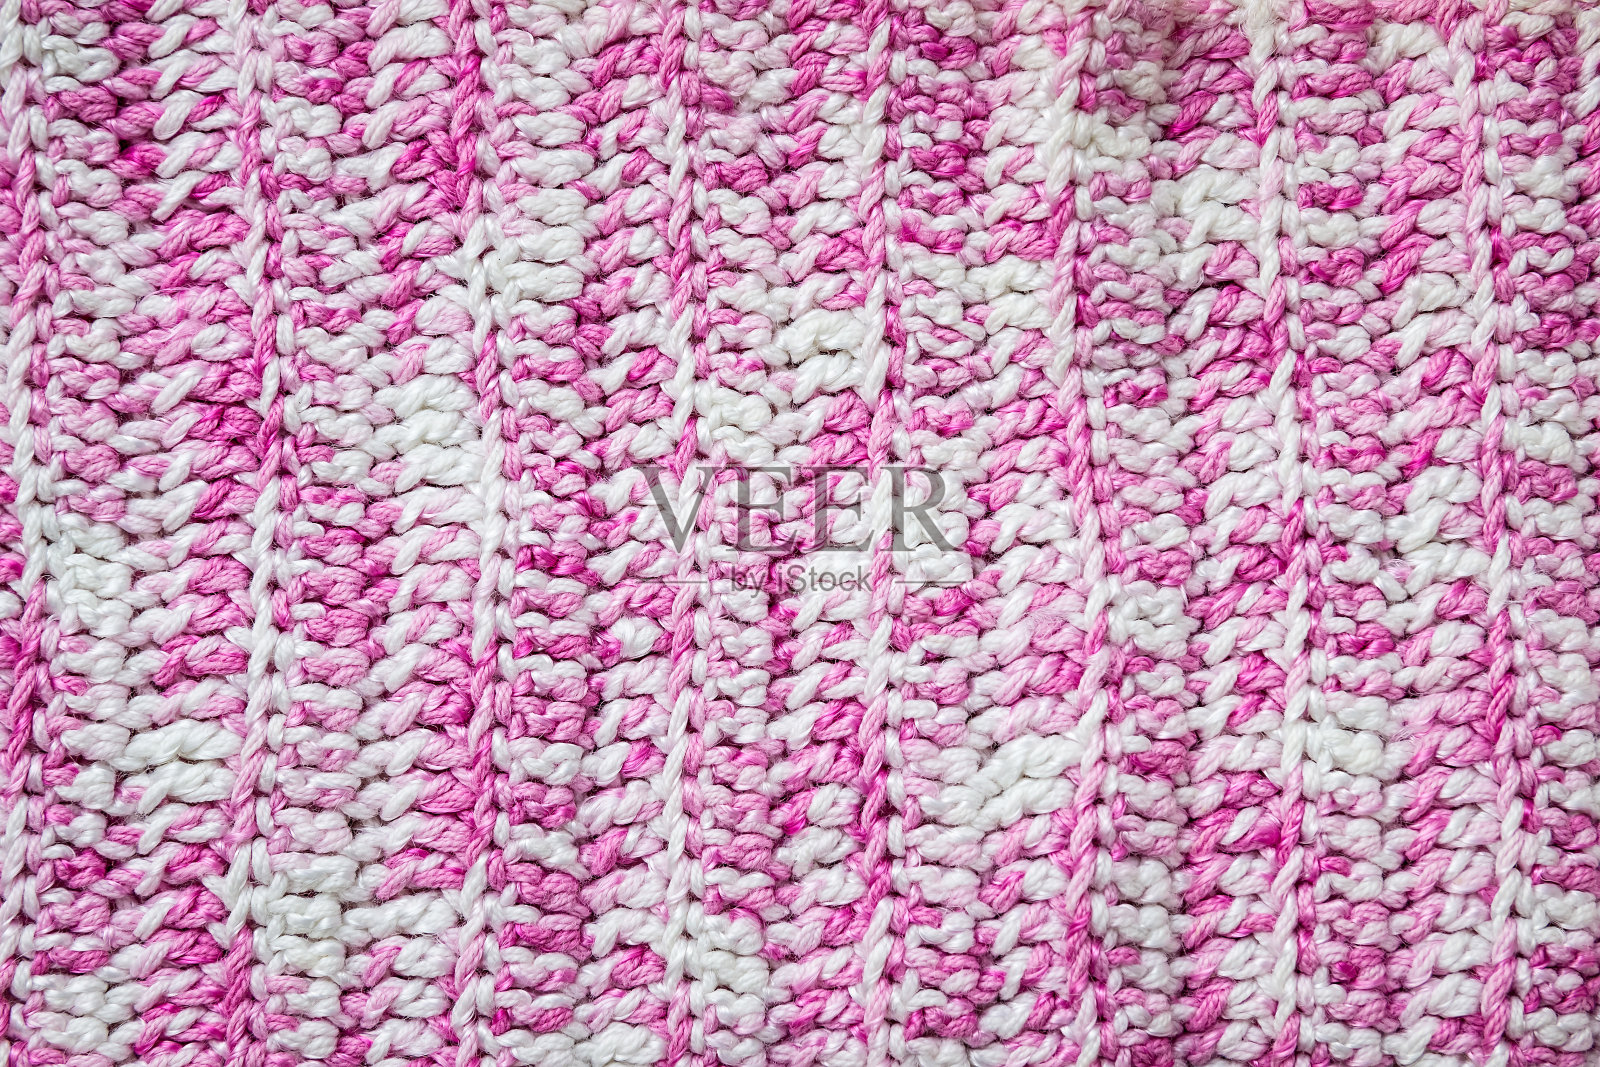 针织的背景。毛线样品用羊毛编织的样品编织模式。照片摄影图片